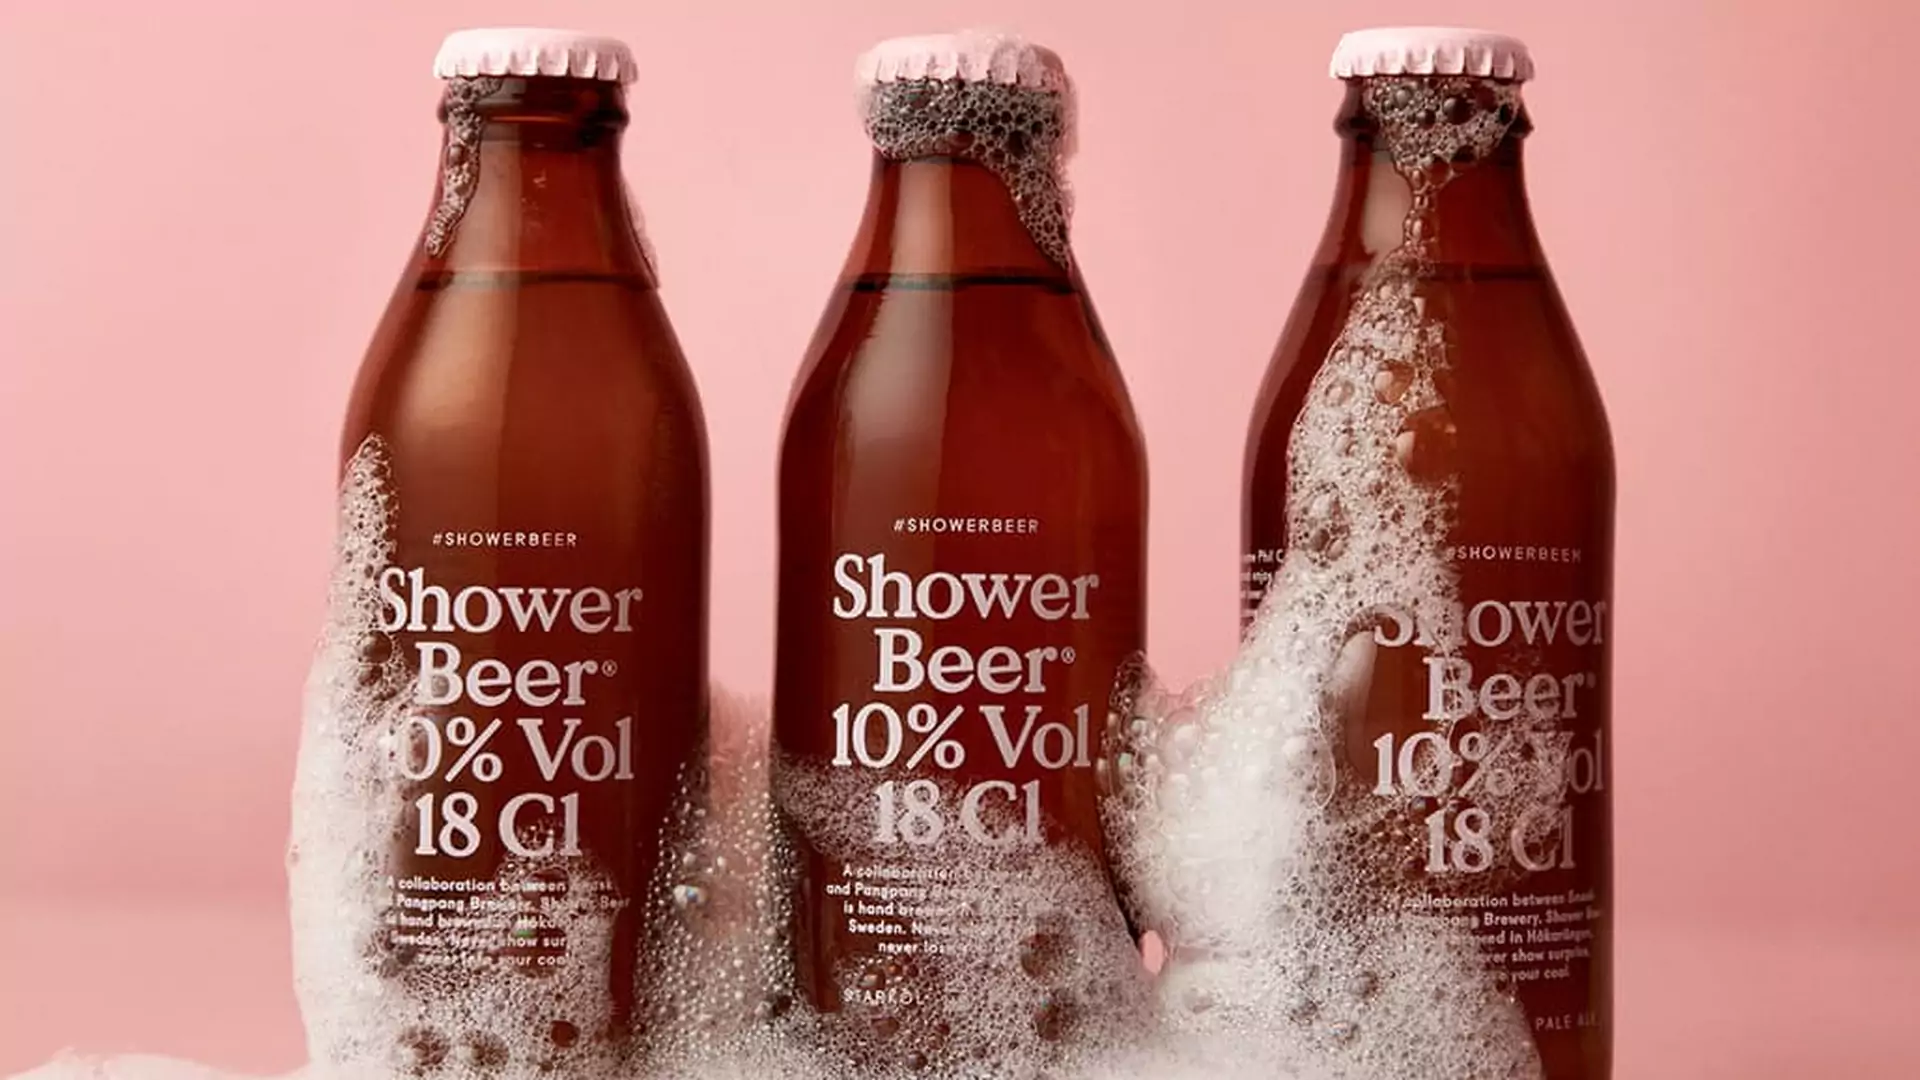 Piwo do picia specjalnie pod prysznicem istnieje i sprzedaje się jak szalone